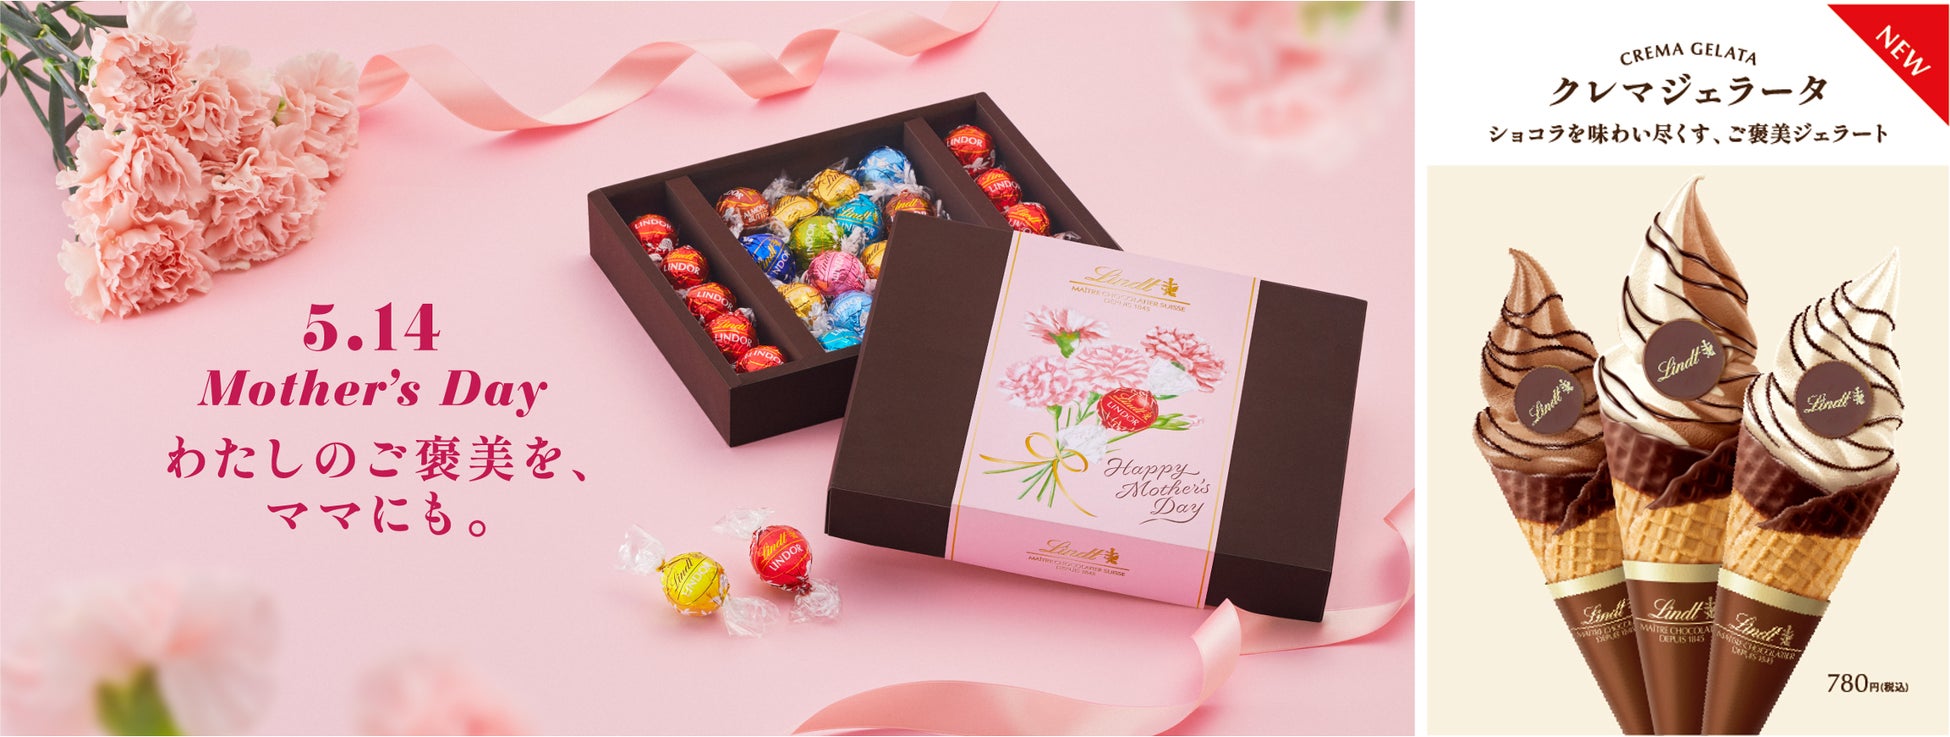 プレミアムチョコレート リンツの『母の日 コレクション』が4月17日より販売！同日よりチョコレート尽くしのジェラート「クレマジェラータ」も新登場